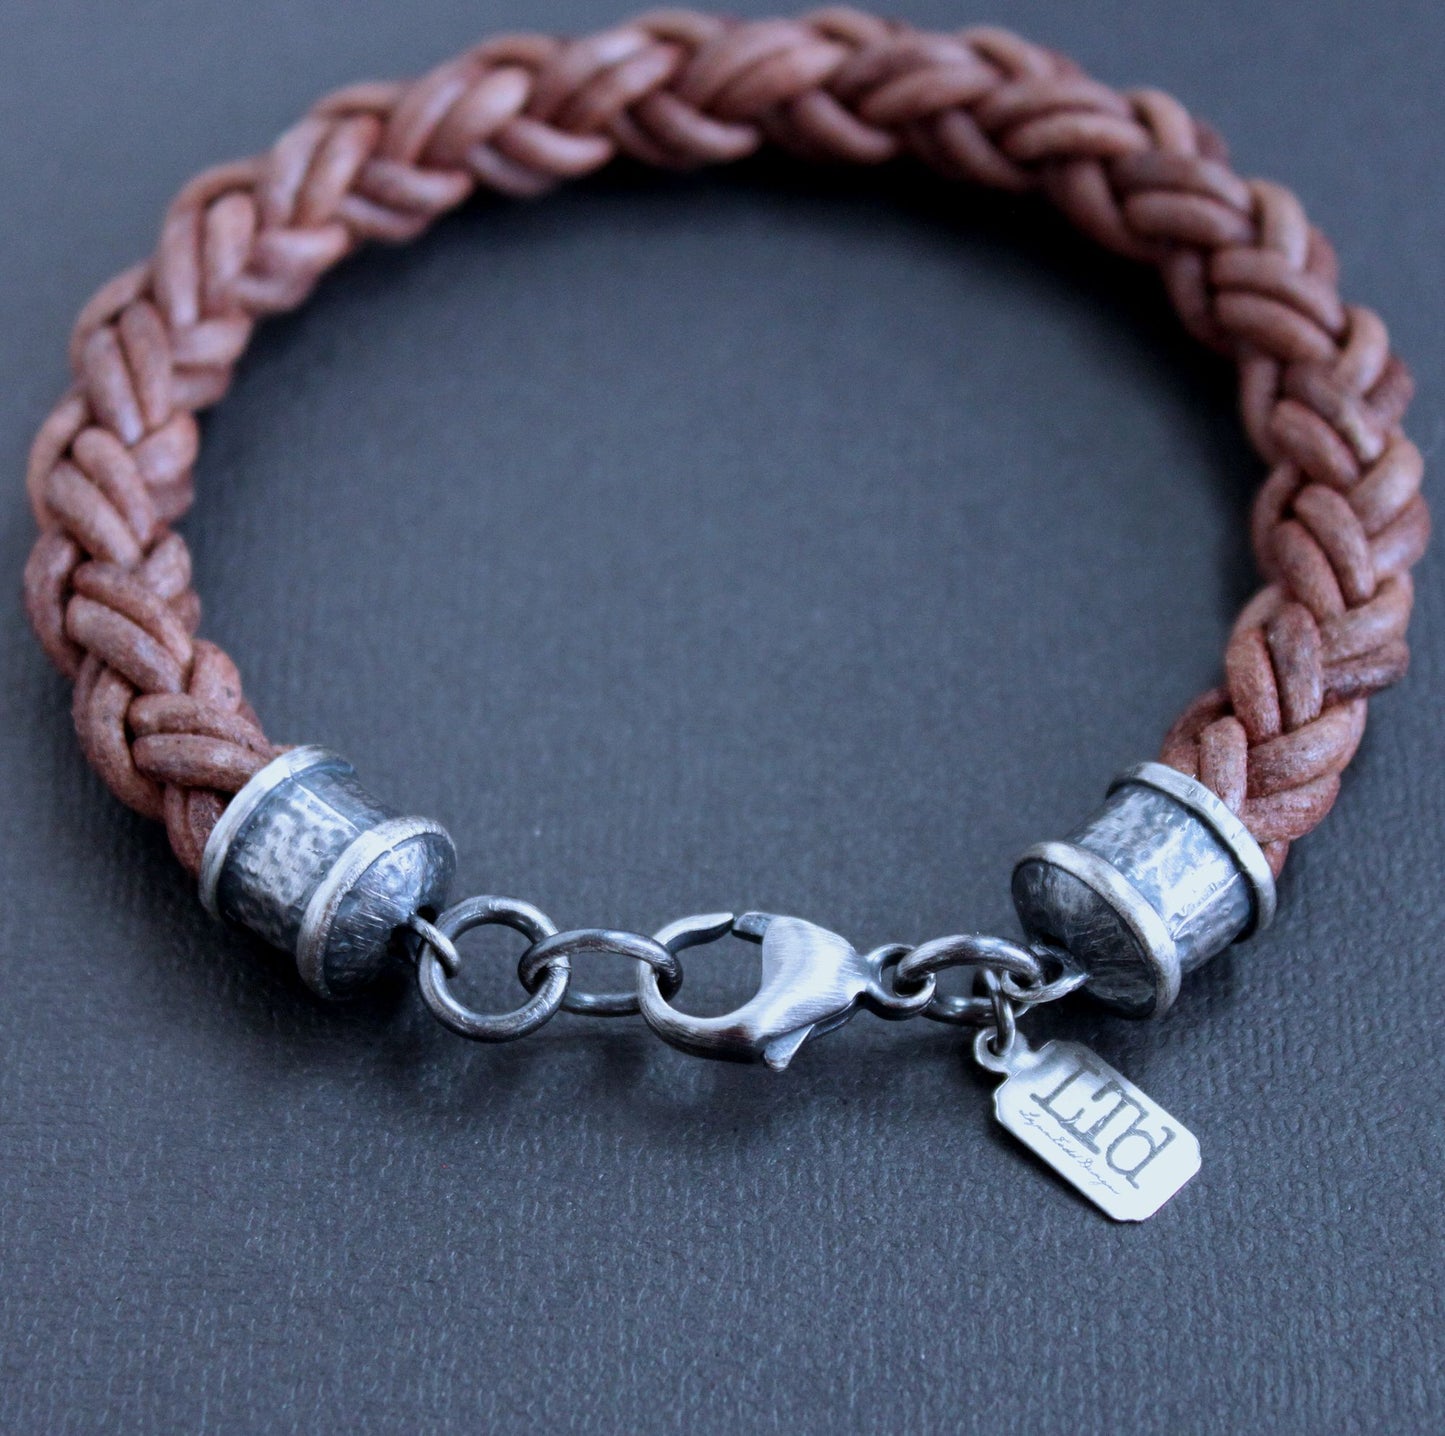 Men's thick leather braid bracelet